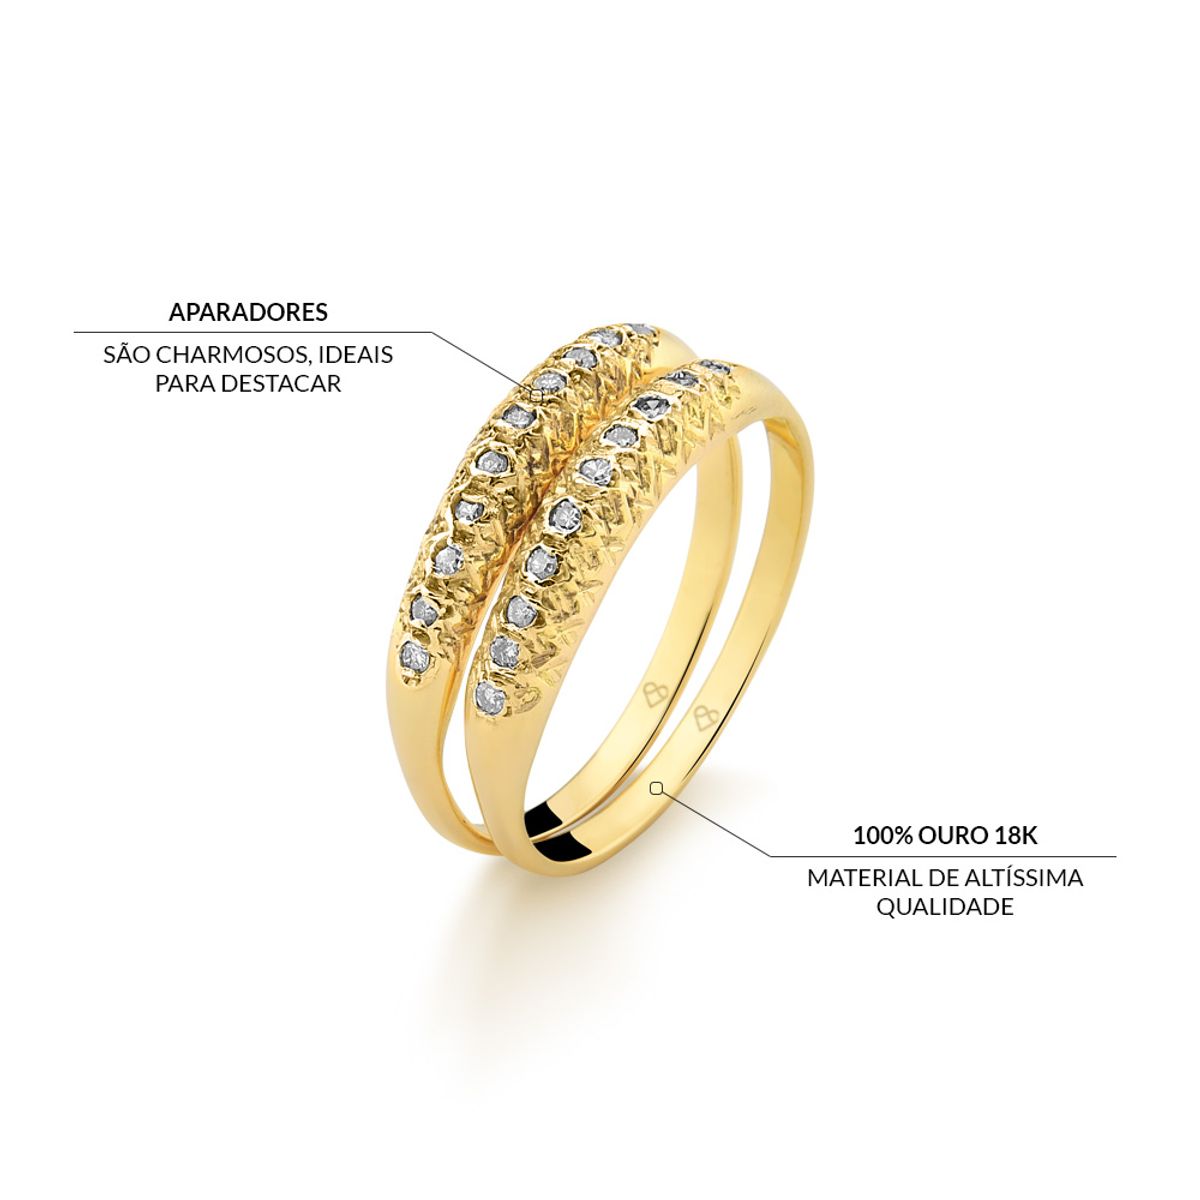 Aparador de Aliança em ouro 18k, com 22 diamantes e largura de 2mm - Golden  & Co - A Sua Loja de Alianças e Joias Personalizadas